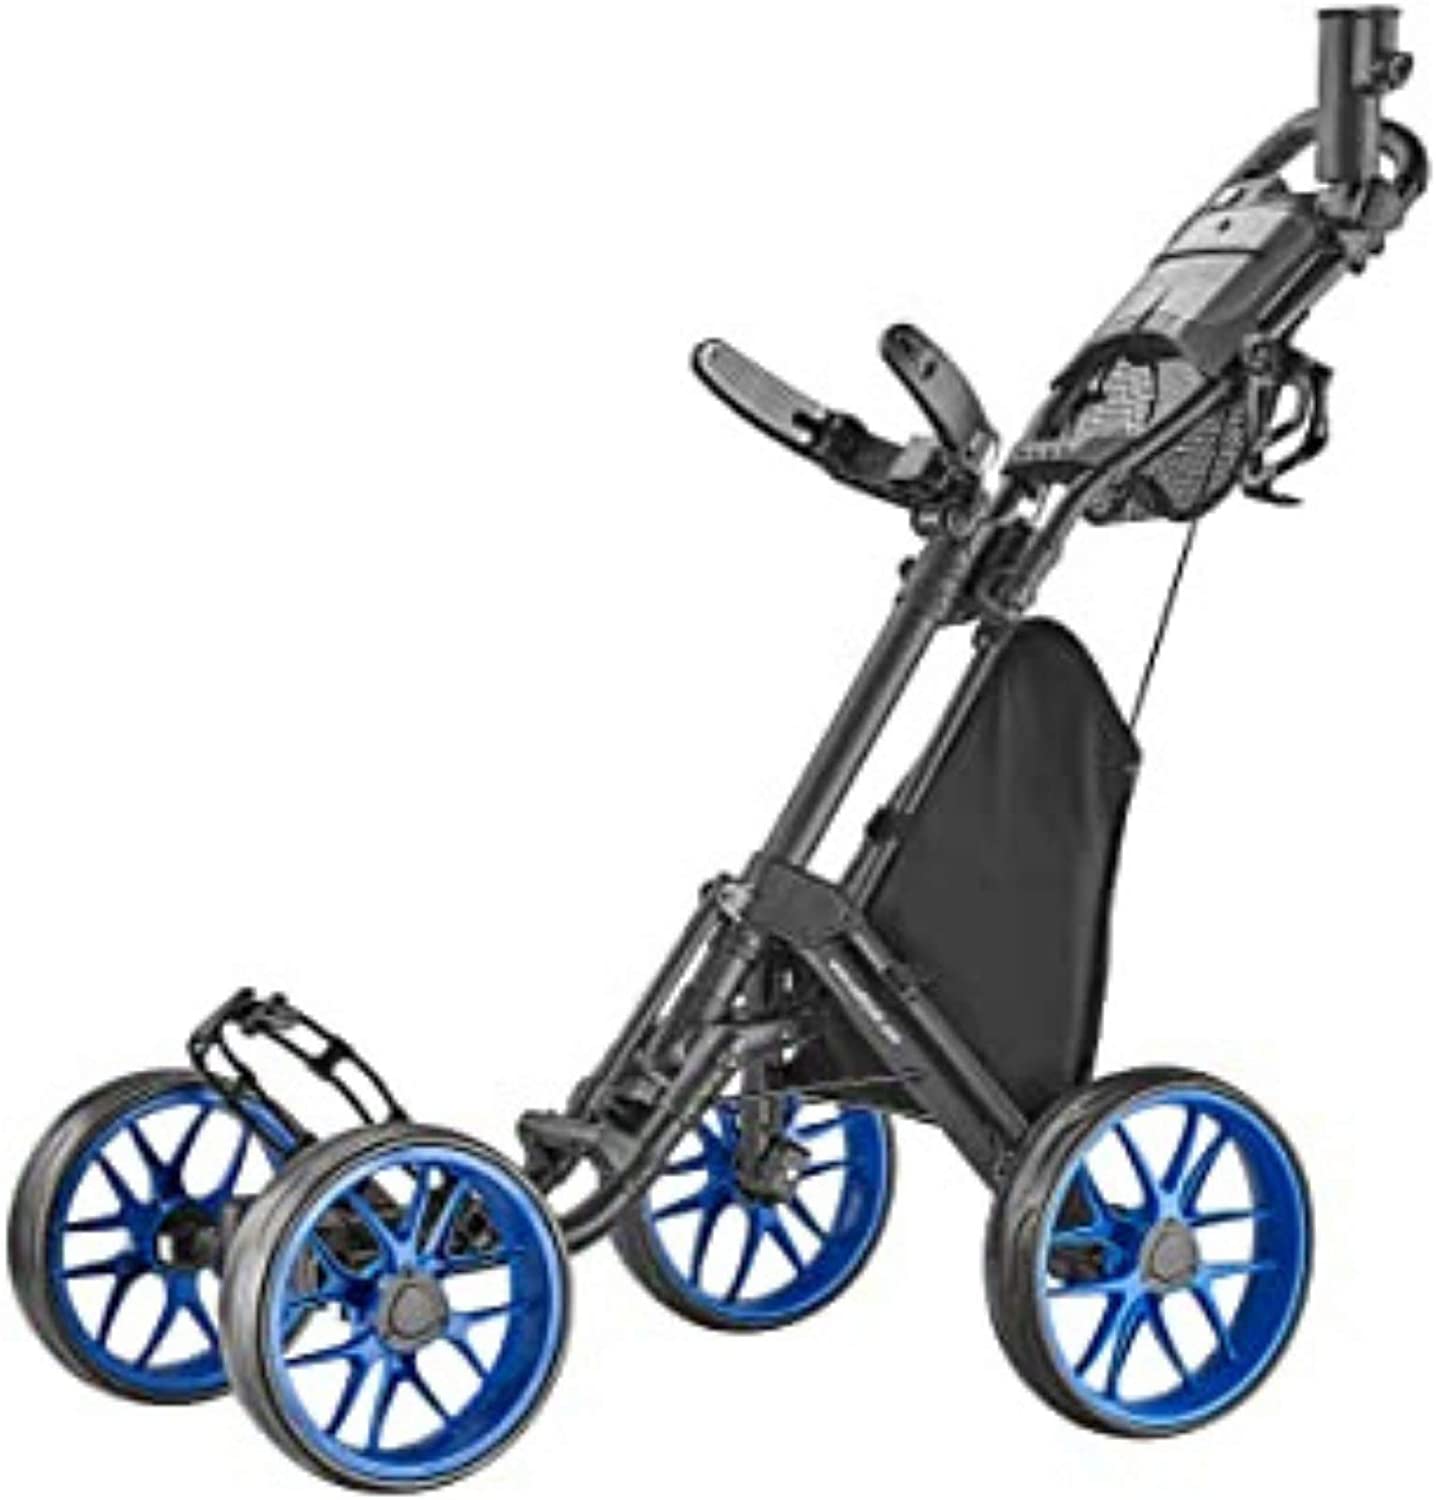 CaddyTek 4 Wheel Golf Push Cart - Caddycruiser One Version 8 1-Click Folding Trolley --Boyel Living